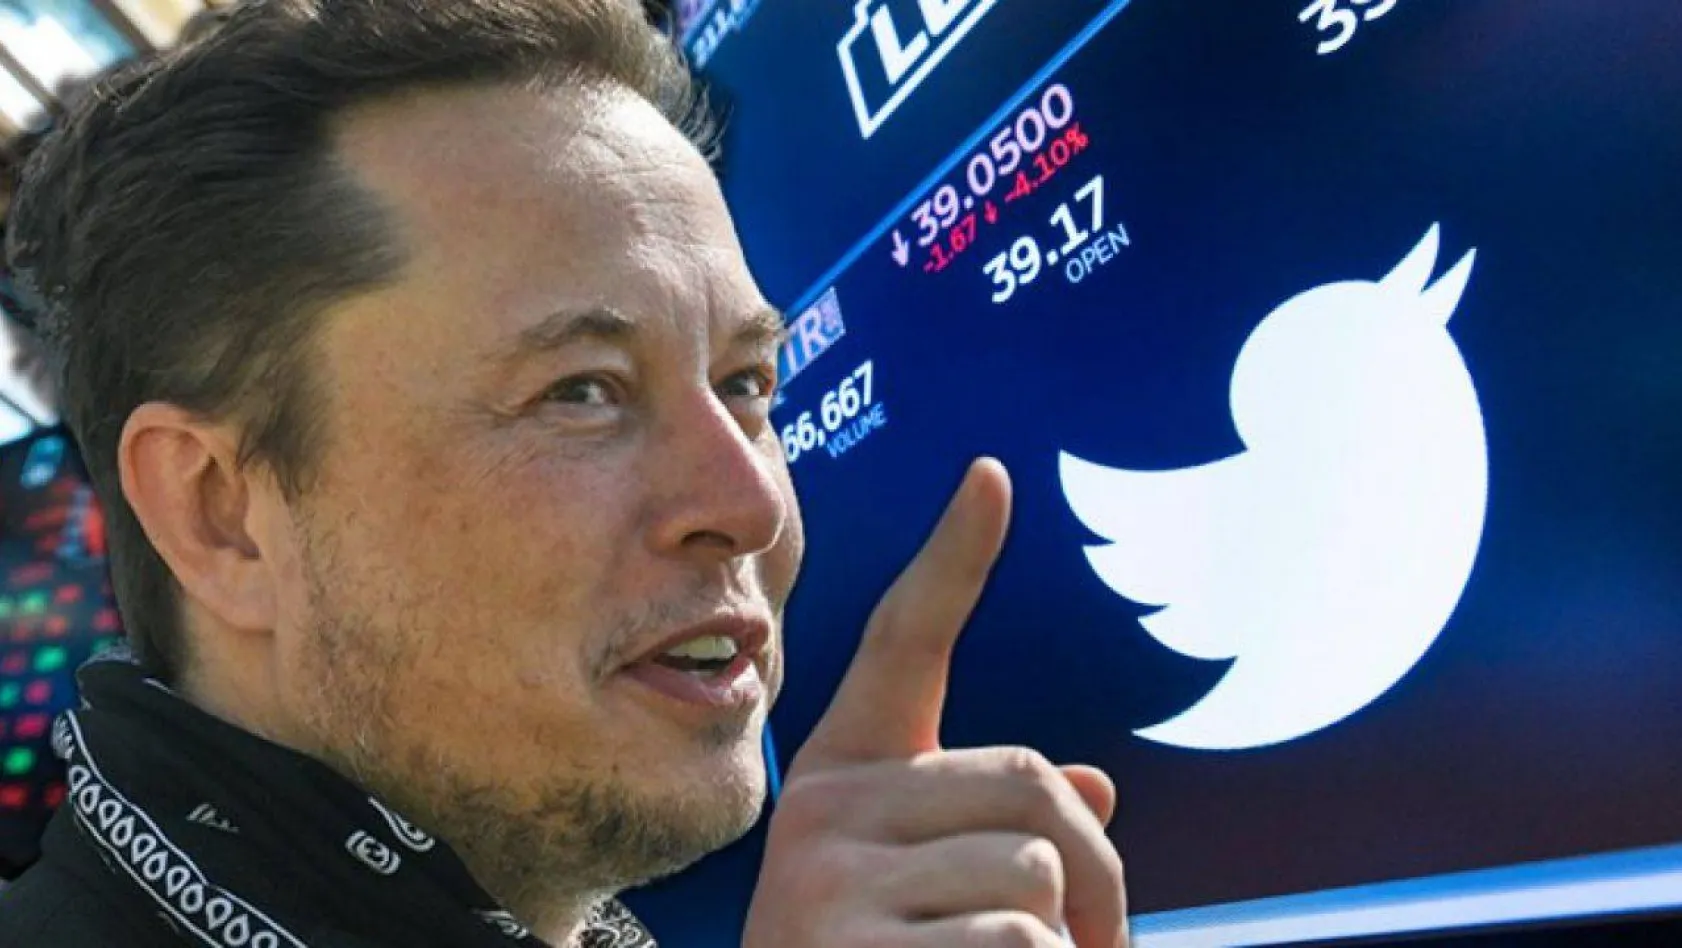 Elon Musk: 'Twitter'da onaylı hesaplardan aylık 8 dolar alınacak'